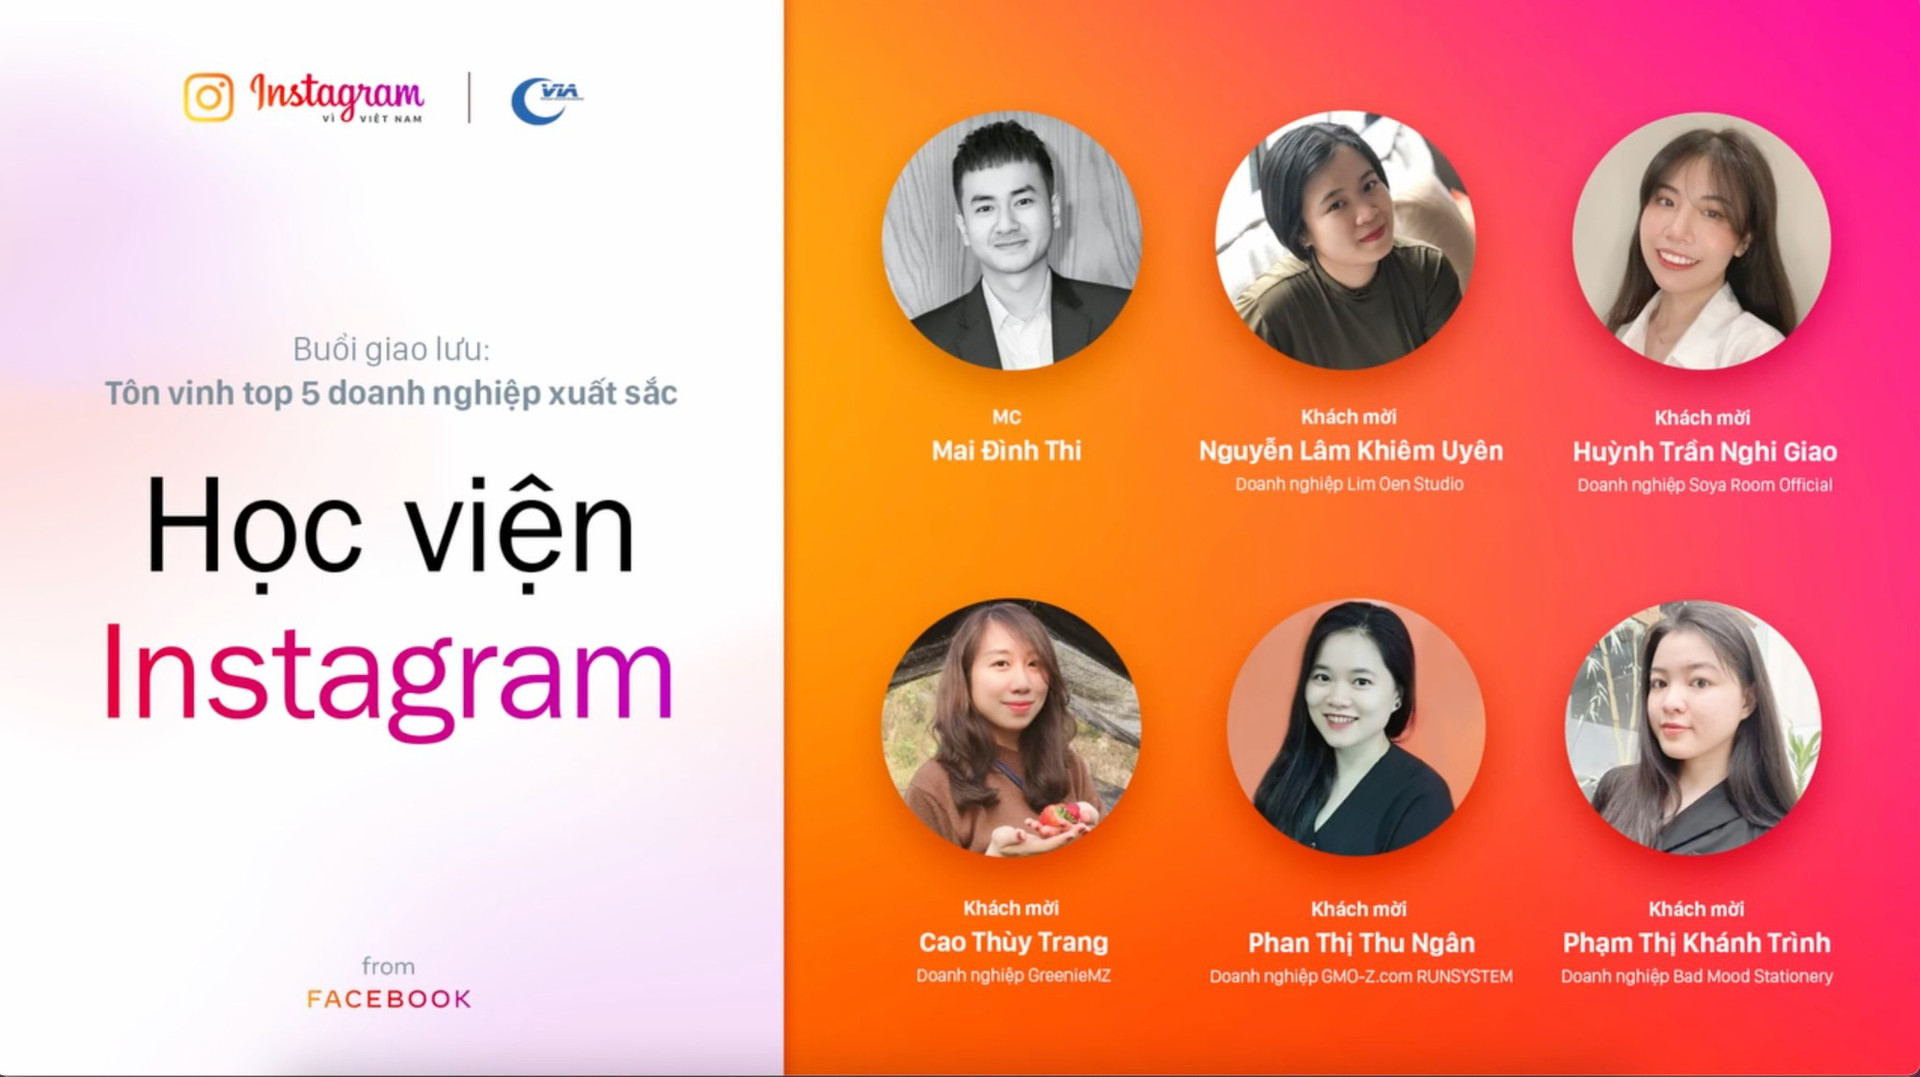 “Học viện Instagram” tạo động lực mới cho doanh nhân trẻ trên hành trình khởi nghiệp - Ảnh 2.